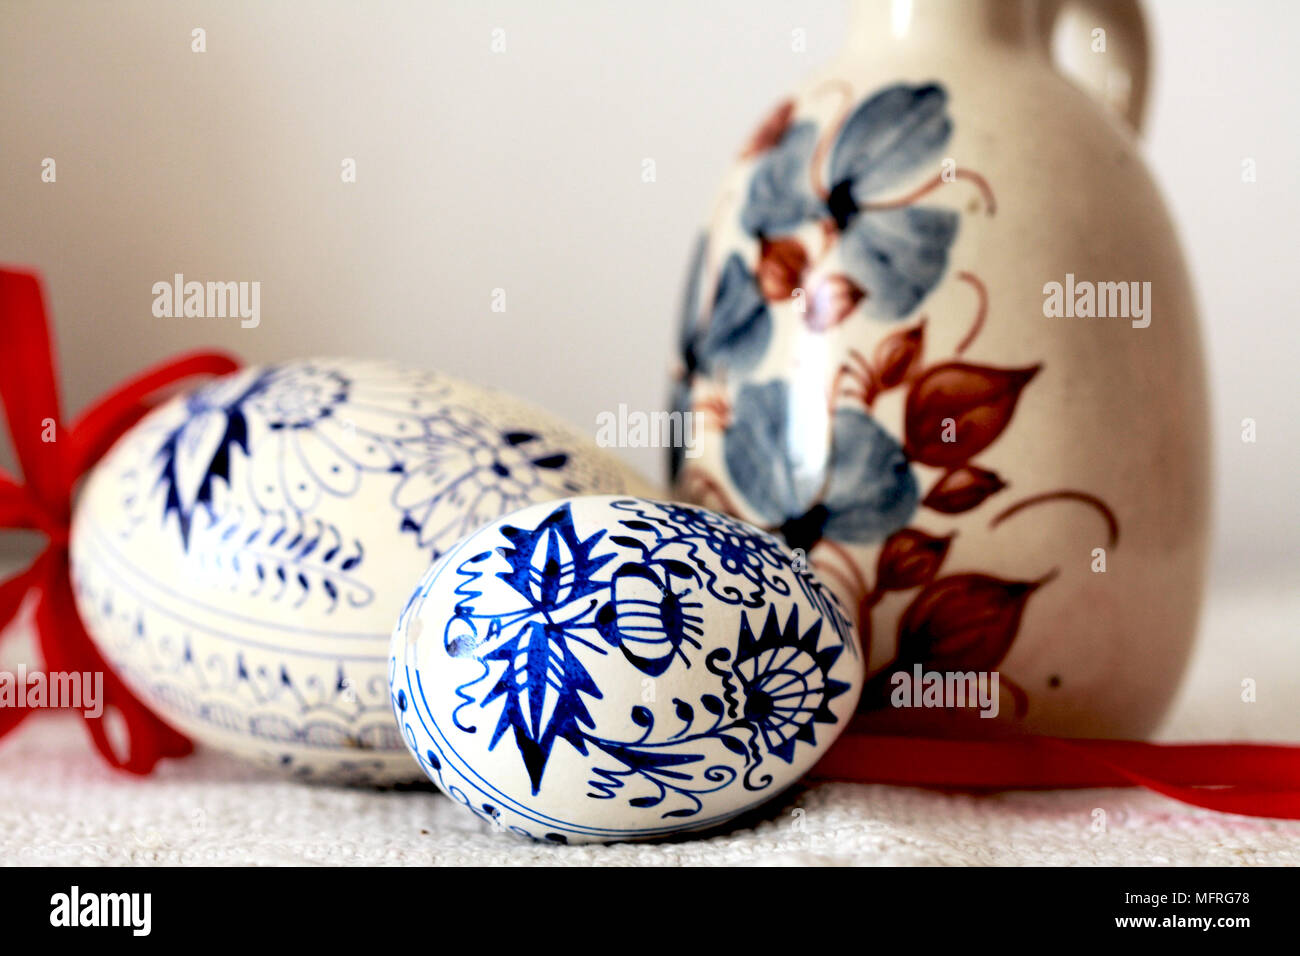 Bleu et blanc traditionnels oeufs de Pâques République Tchèque à côté d'un brown jug. Deux oignons bleu et blanc peint à la main de style oeufs de Pâques en République tchèque reste à côté d'une douleur à la main Banque D'Images